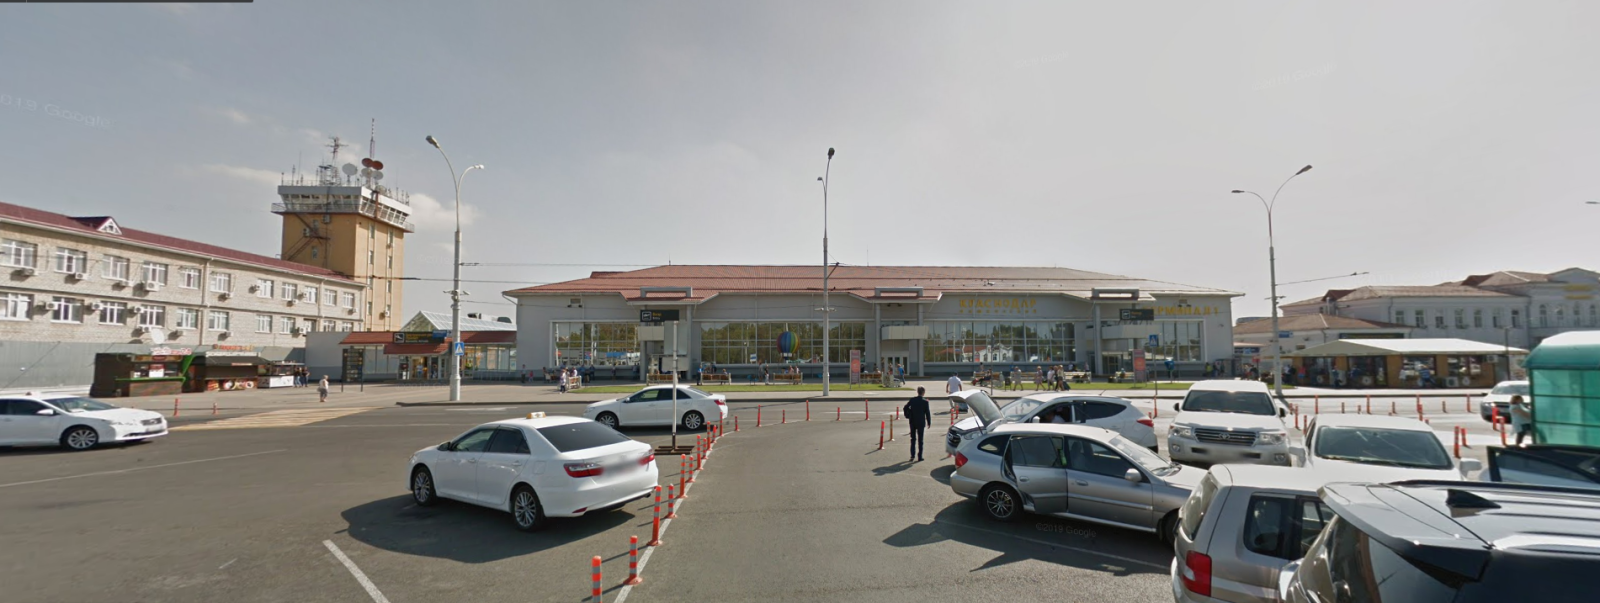 Обустройство парковки аэропорта г. Краснодар с помощью разделительных столбиков 750 мм